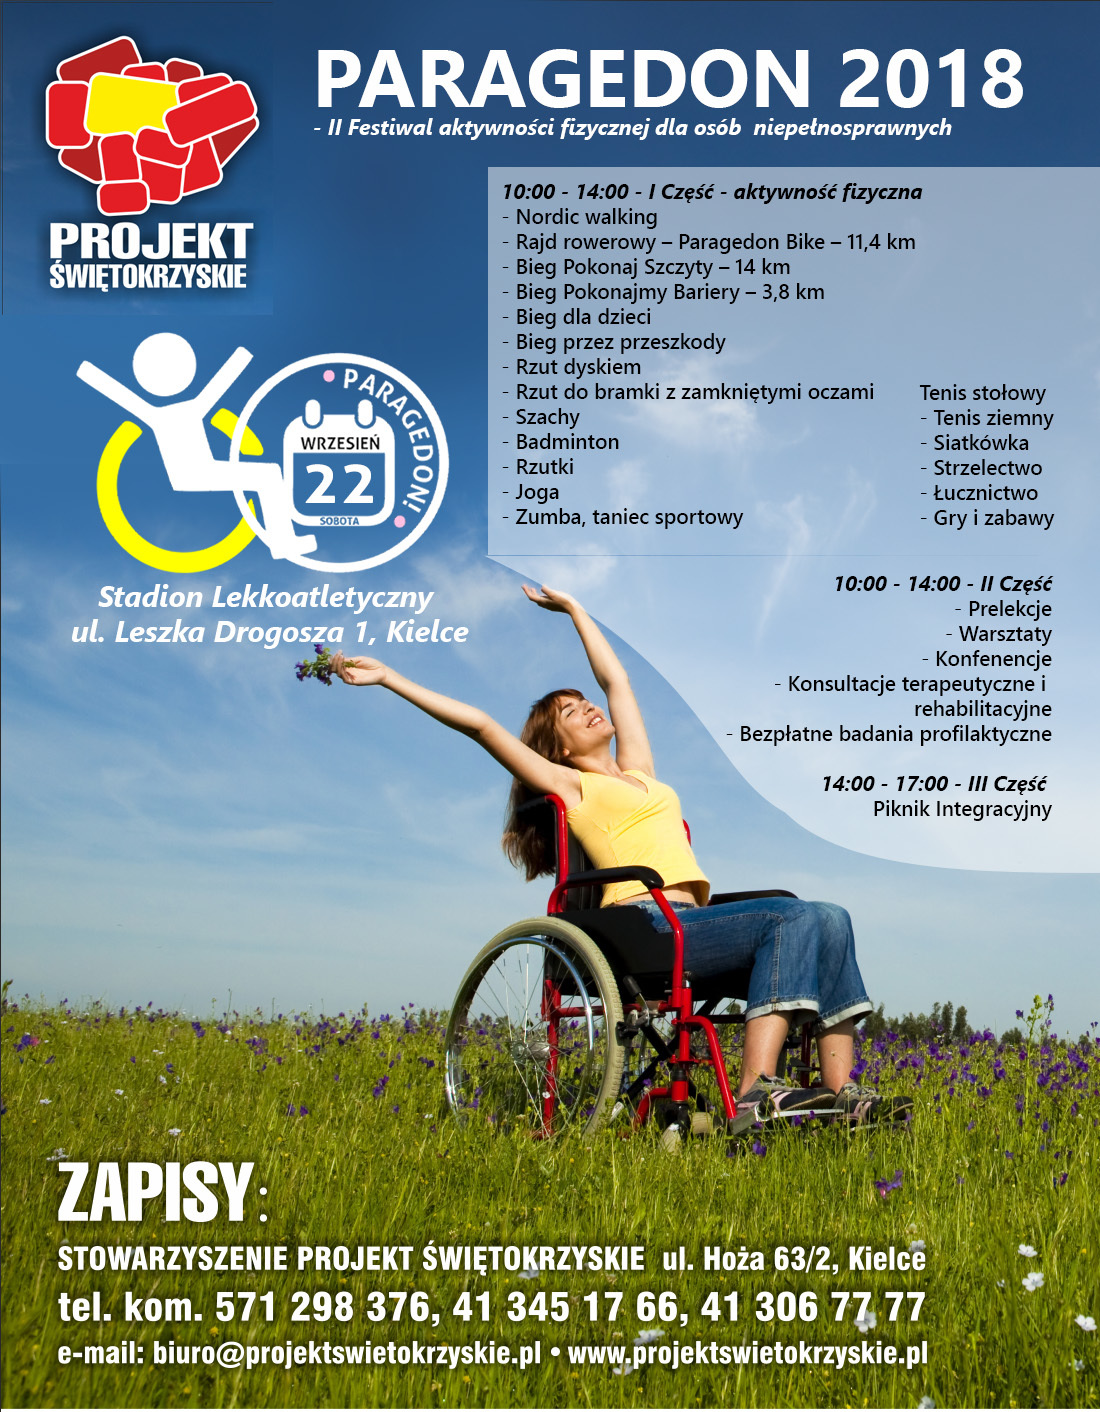 Paragedon 2018 - II festiwal aktywności fizycznej dla osób niepełnosprawnych